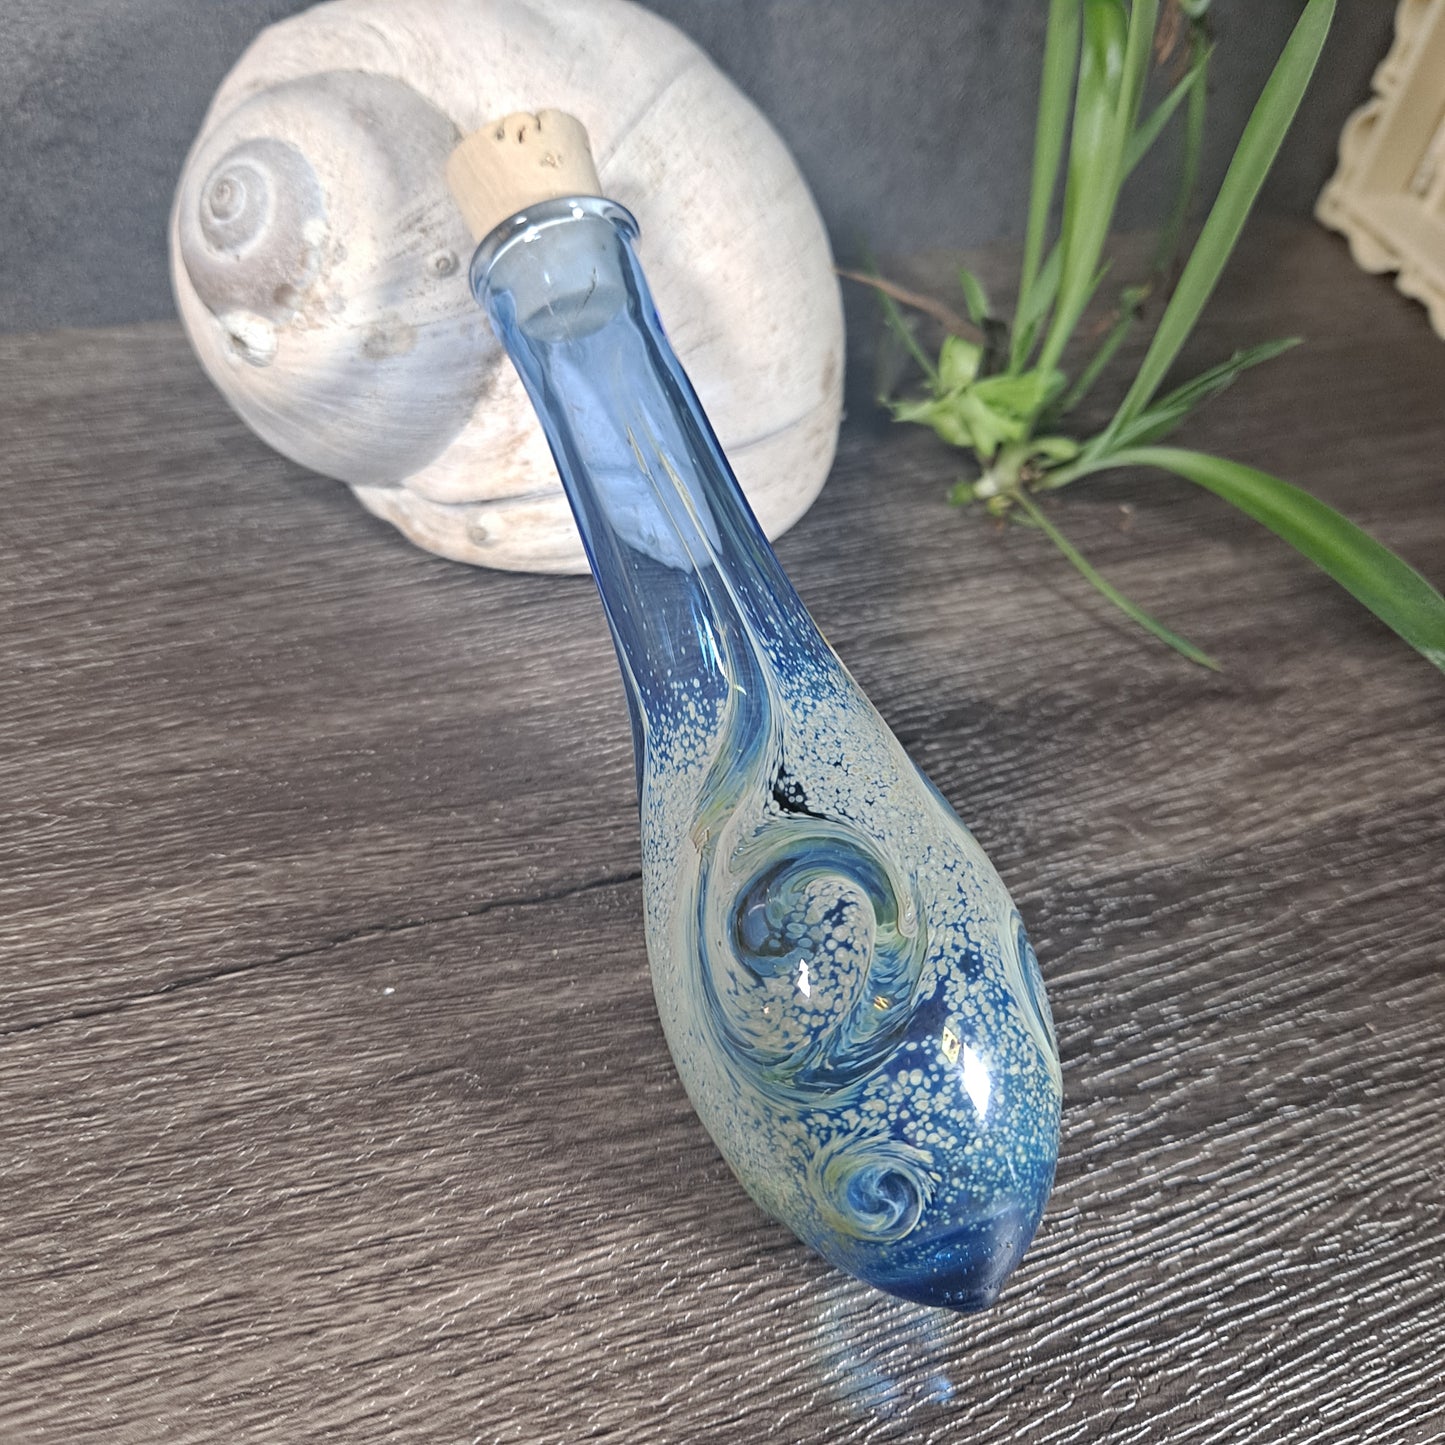 Handblown Glass Bodice Chiller - Potion Bottle - Renaissance Faire Accessories - Bodice Bottle